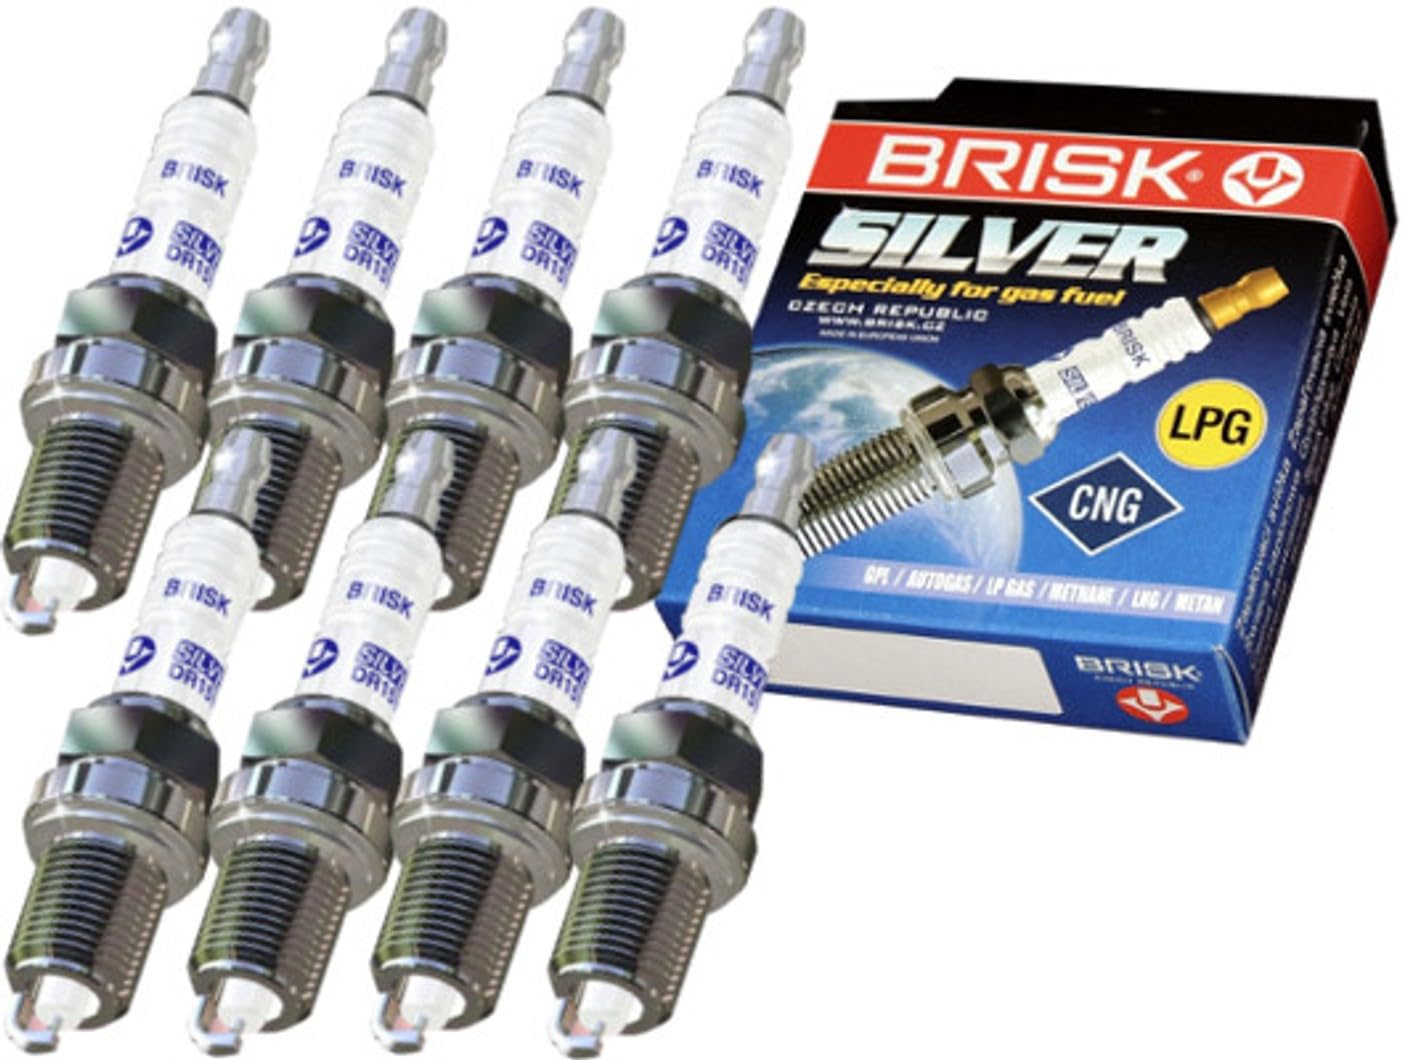 BRISK Silver DR15YS-9 1462 Zündkerzen Benzin LPG GPL CNG Autogas, 8 Stück von BRISK